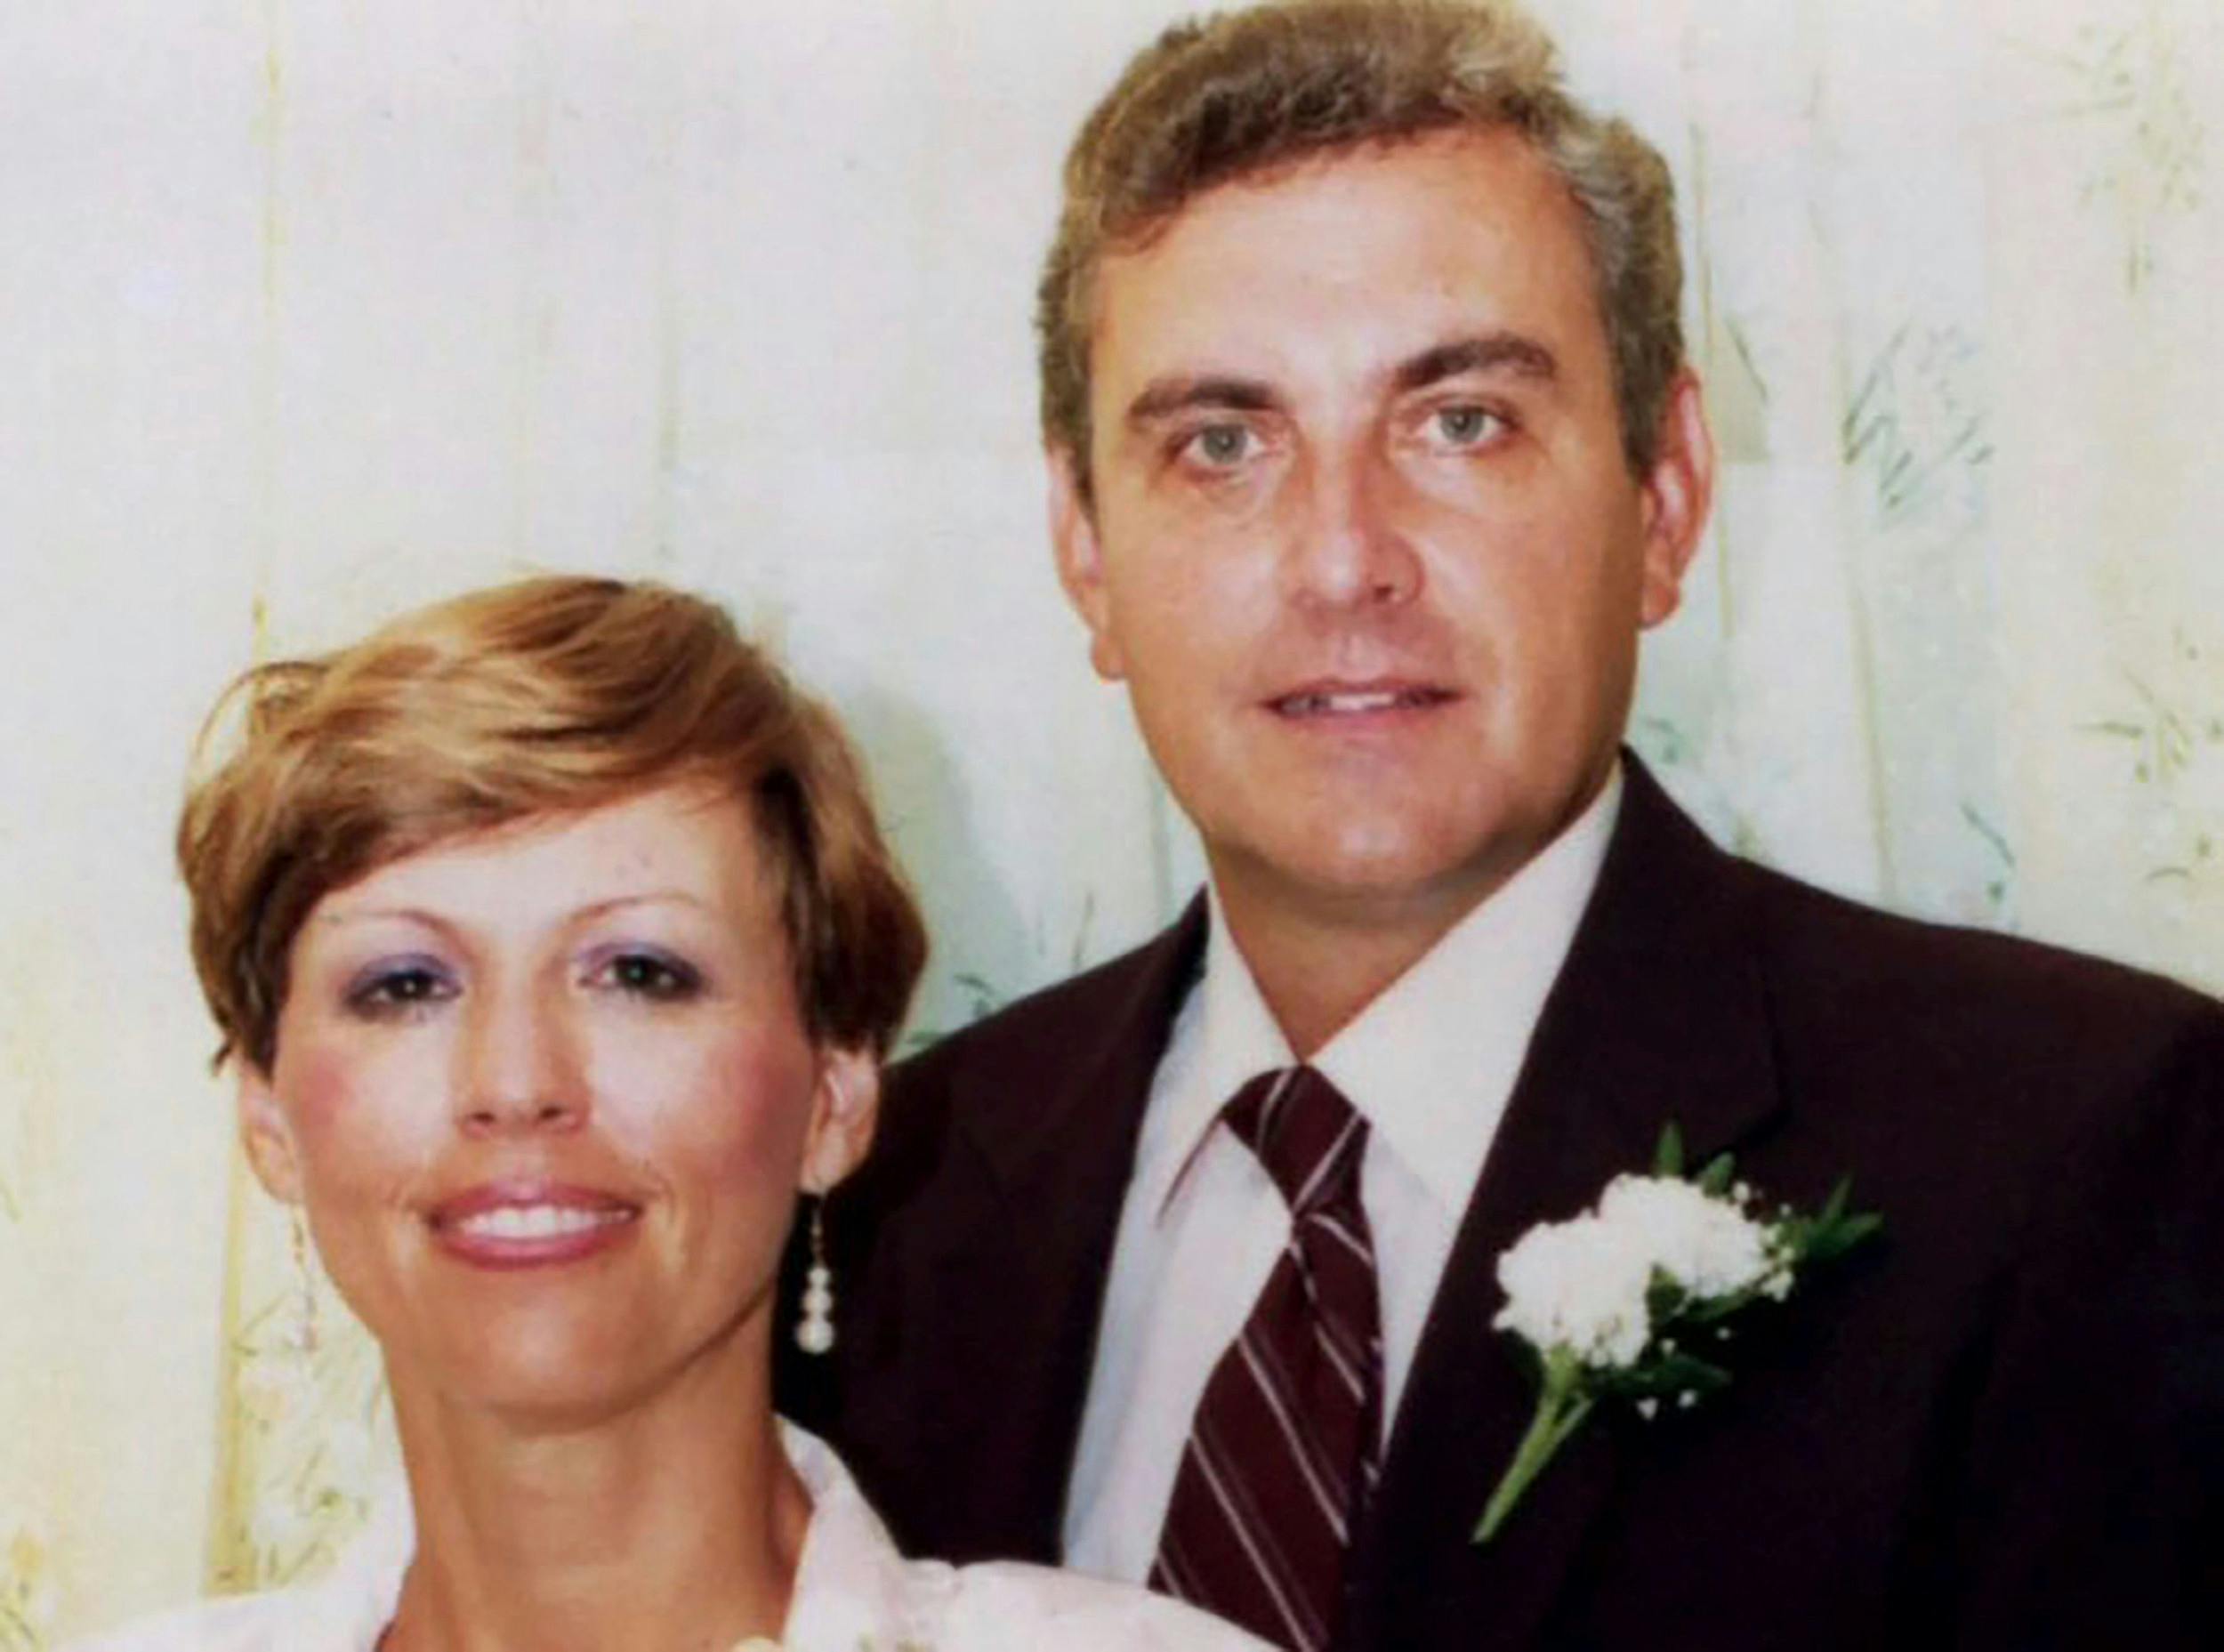 Judith og Ken Nix blev gift i 1985, og i mange år virkede det, som om Ken omsider havde fundet lykken.